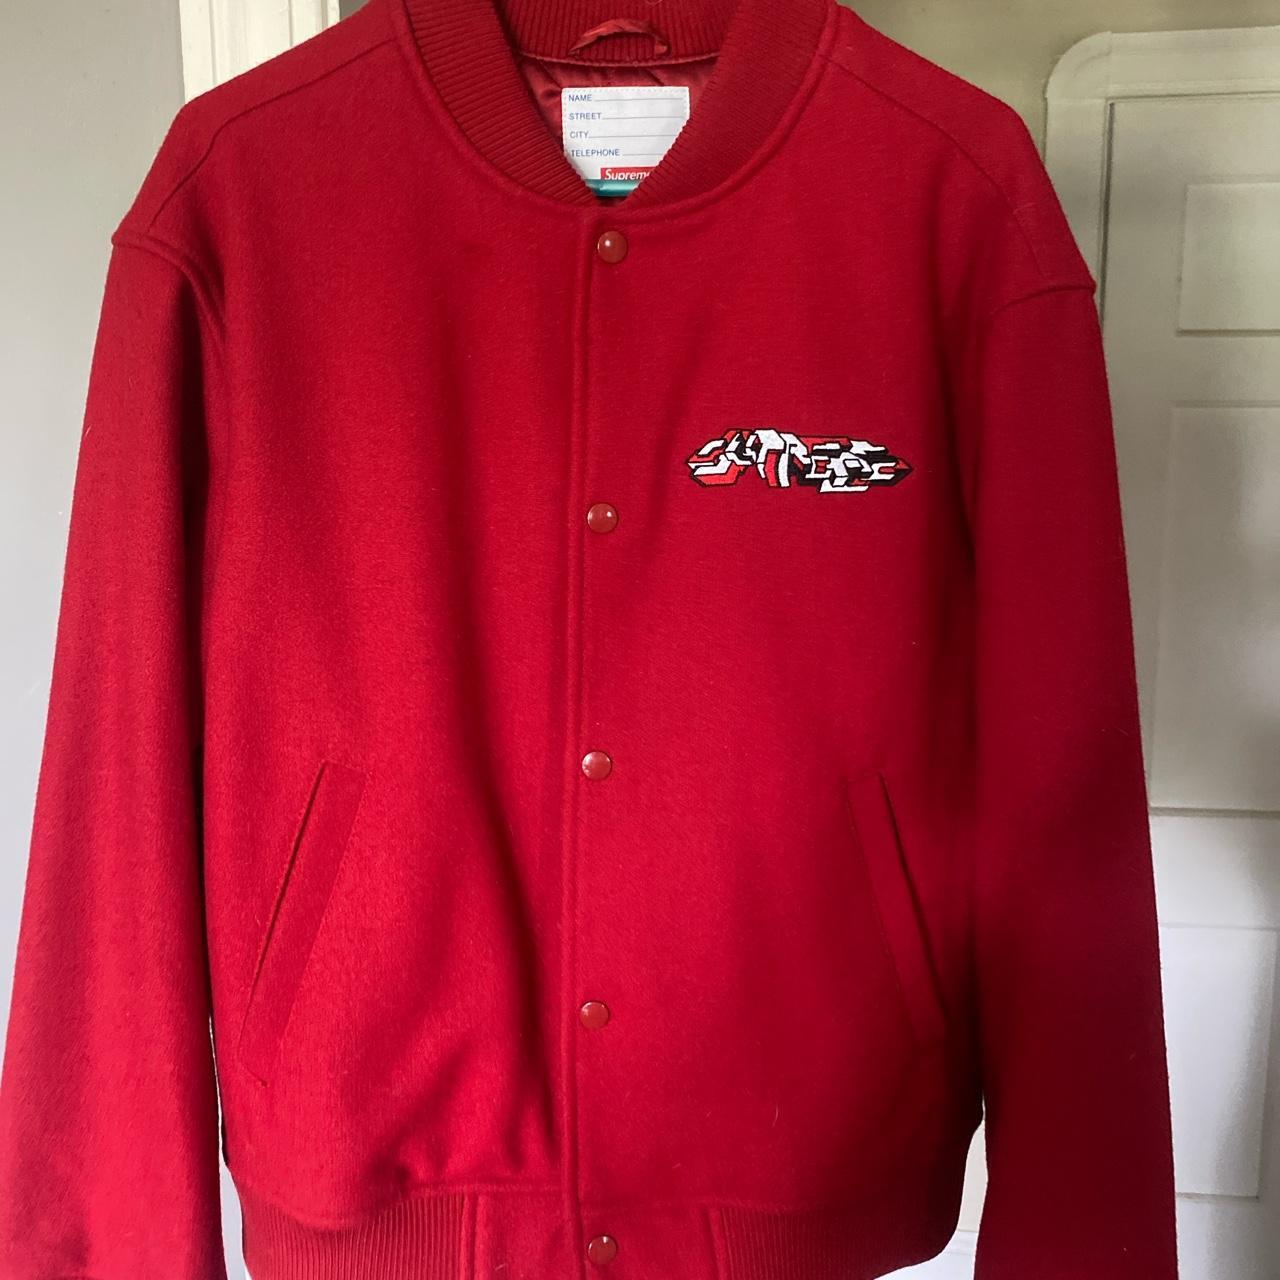 2019 supreme delta logo red varsity jacket like new - Depop